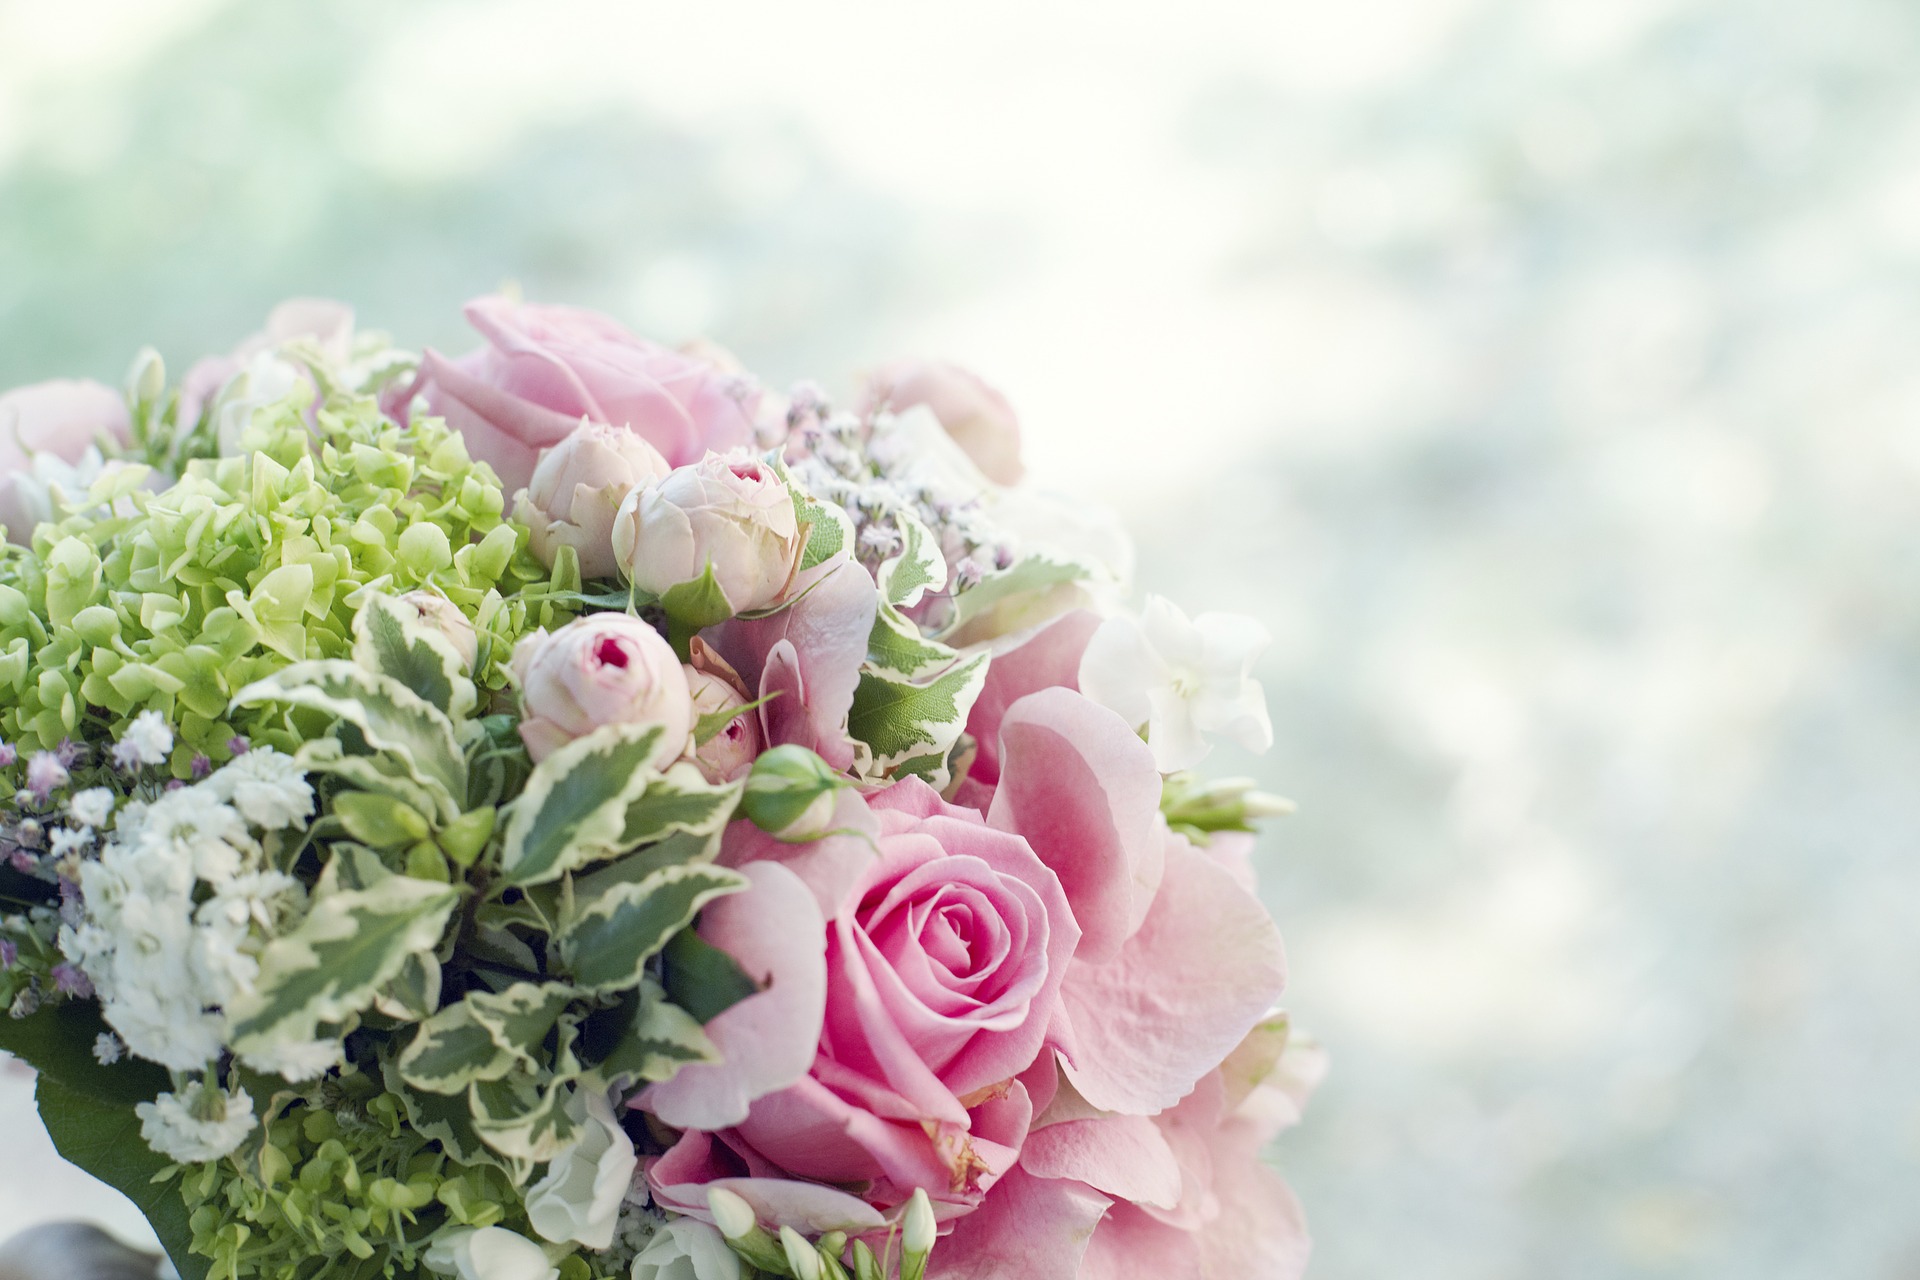 結婚祝いに花束を送るマナー解説 花言葉で種類を選べばいい